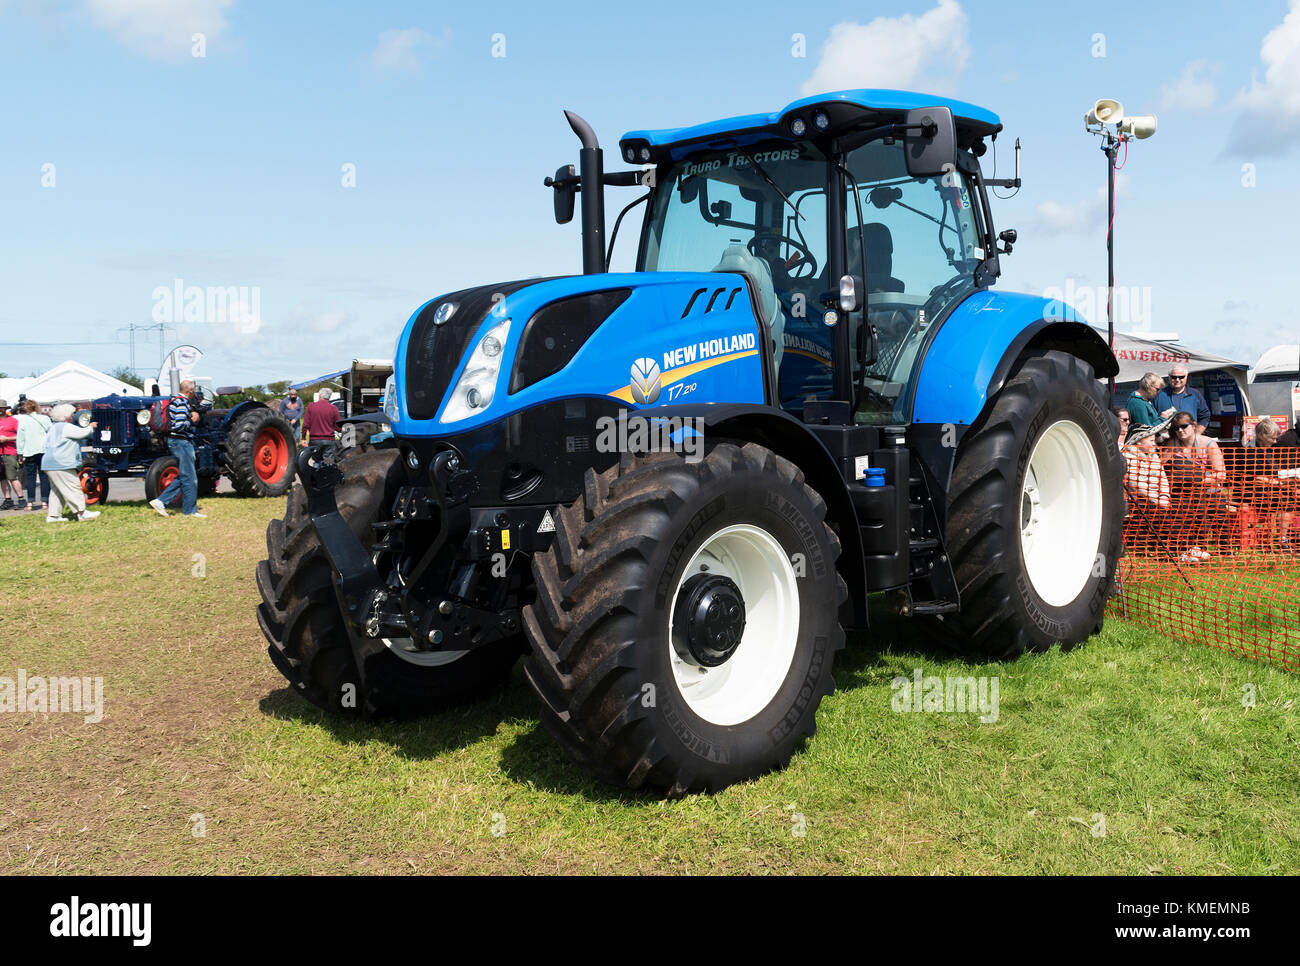 New holland traktor -Fotos und -Bildmaterial in hoher Auflösung – Alamy